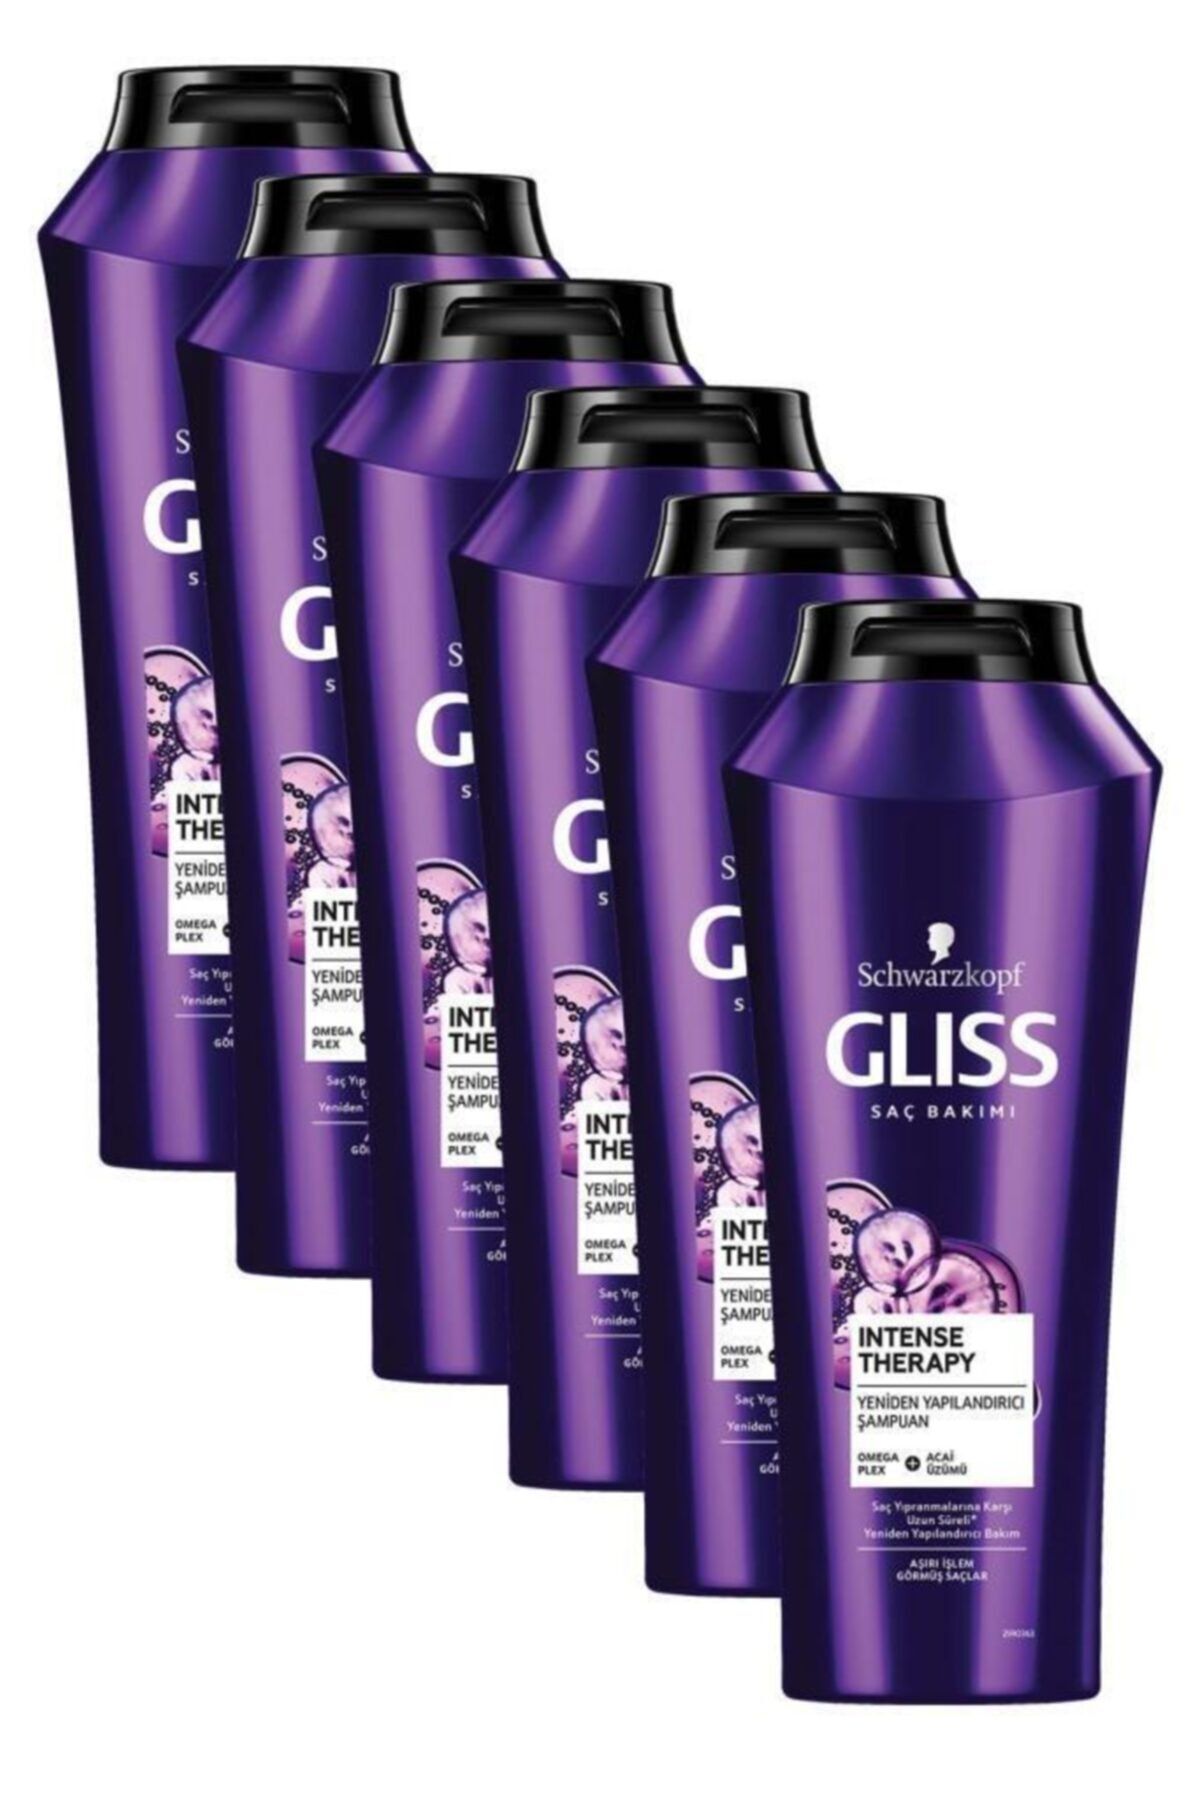 Gliss Intense Therapy Yeniden Yapılandırıcı Şampuan - Omega Plex Ve Acai Üzümü Ile 500 ml X 6 Adet